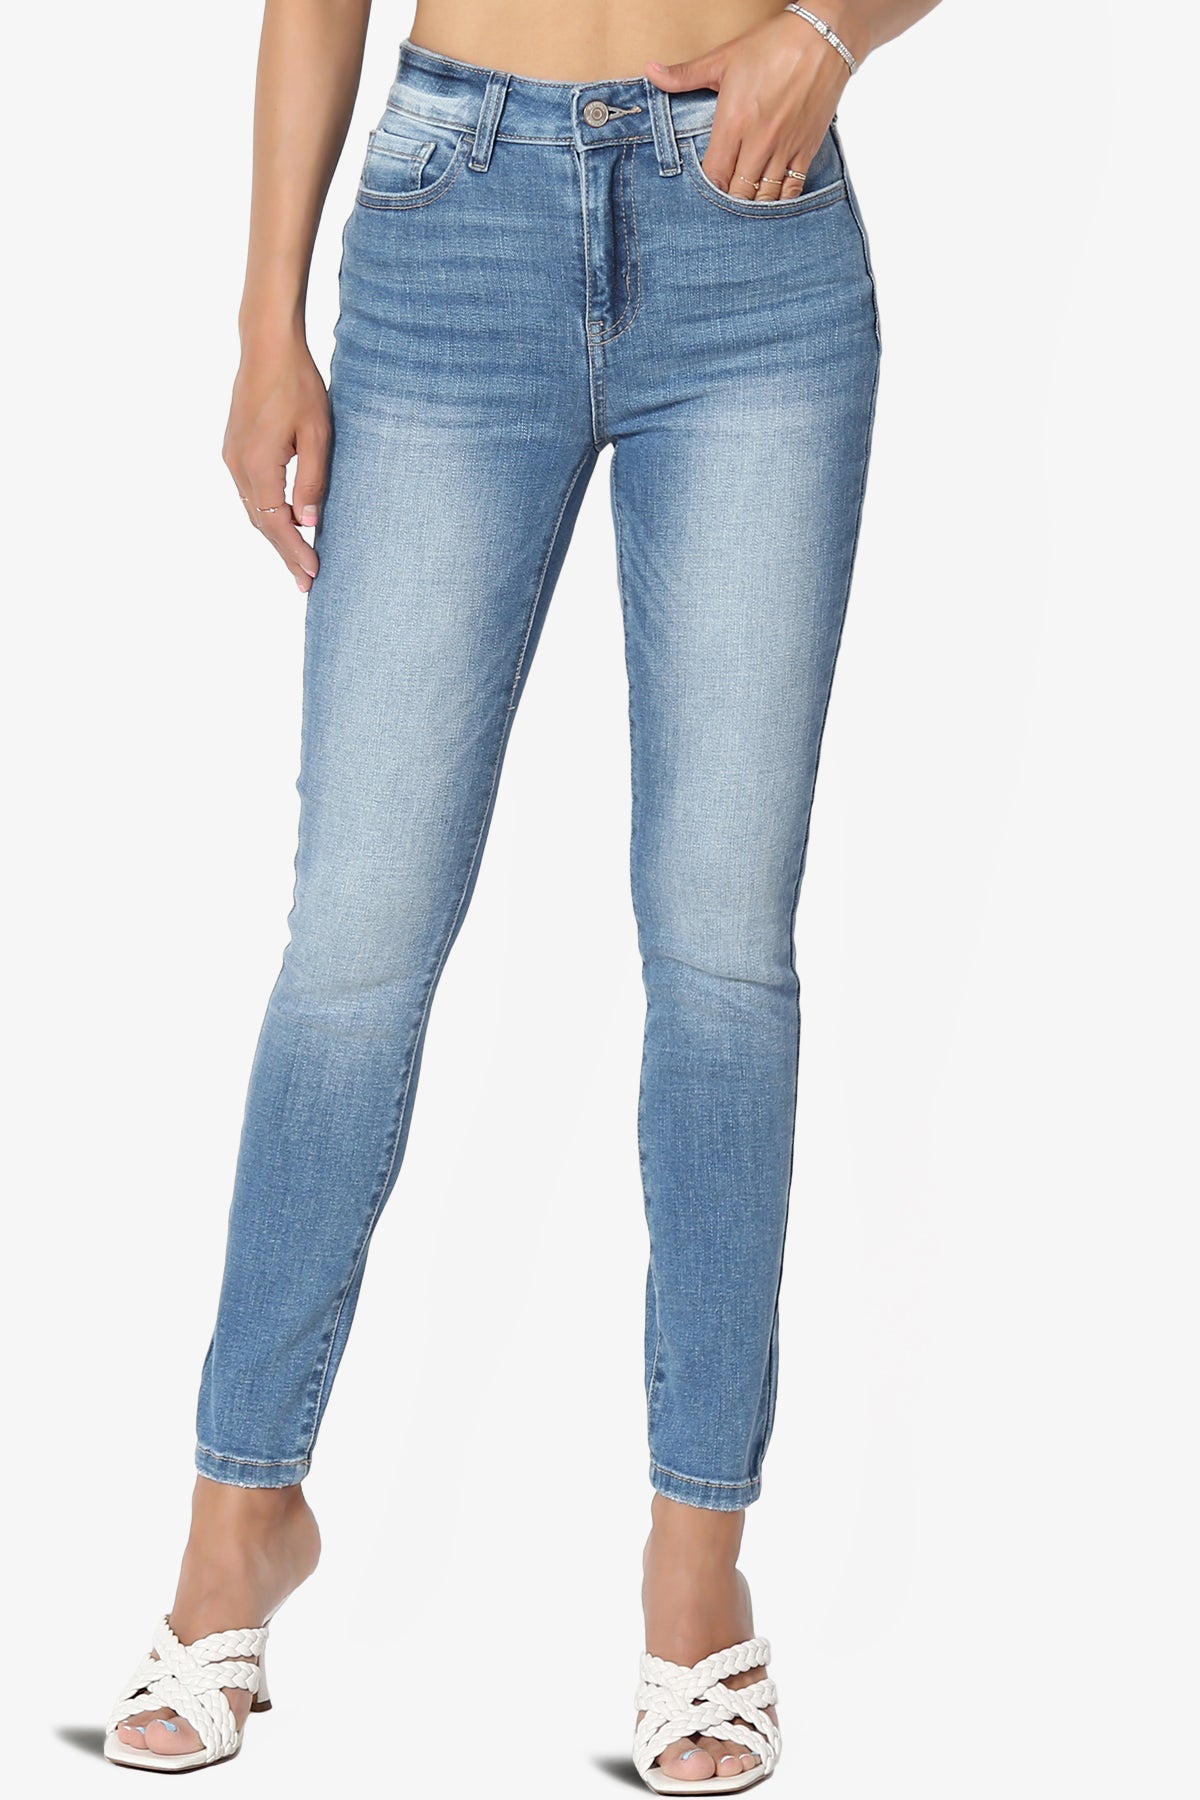 Louella High Rise Stretch Skinny Jeans in Medium